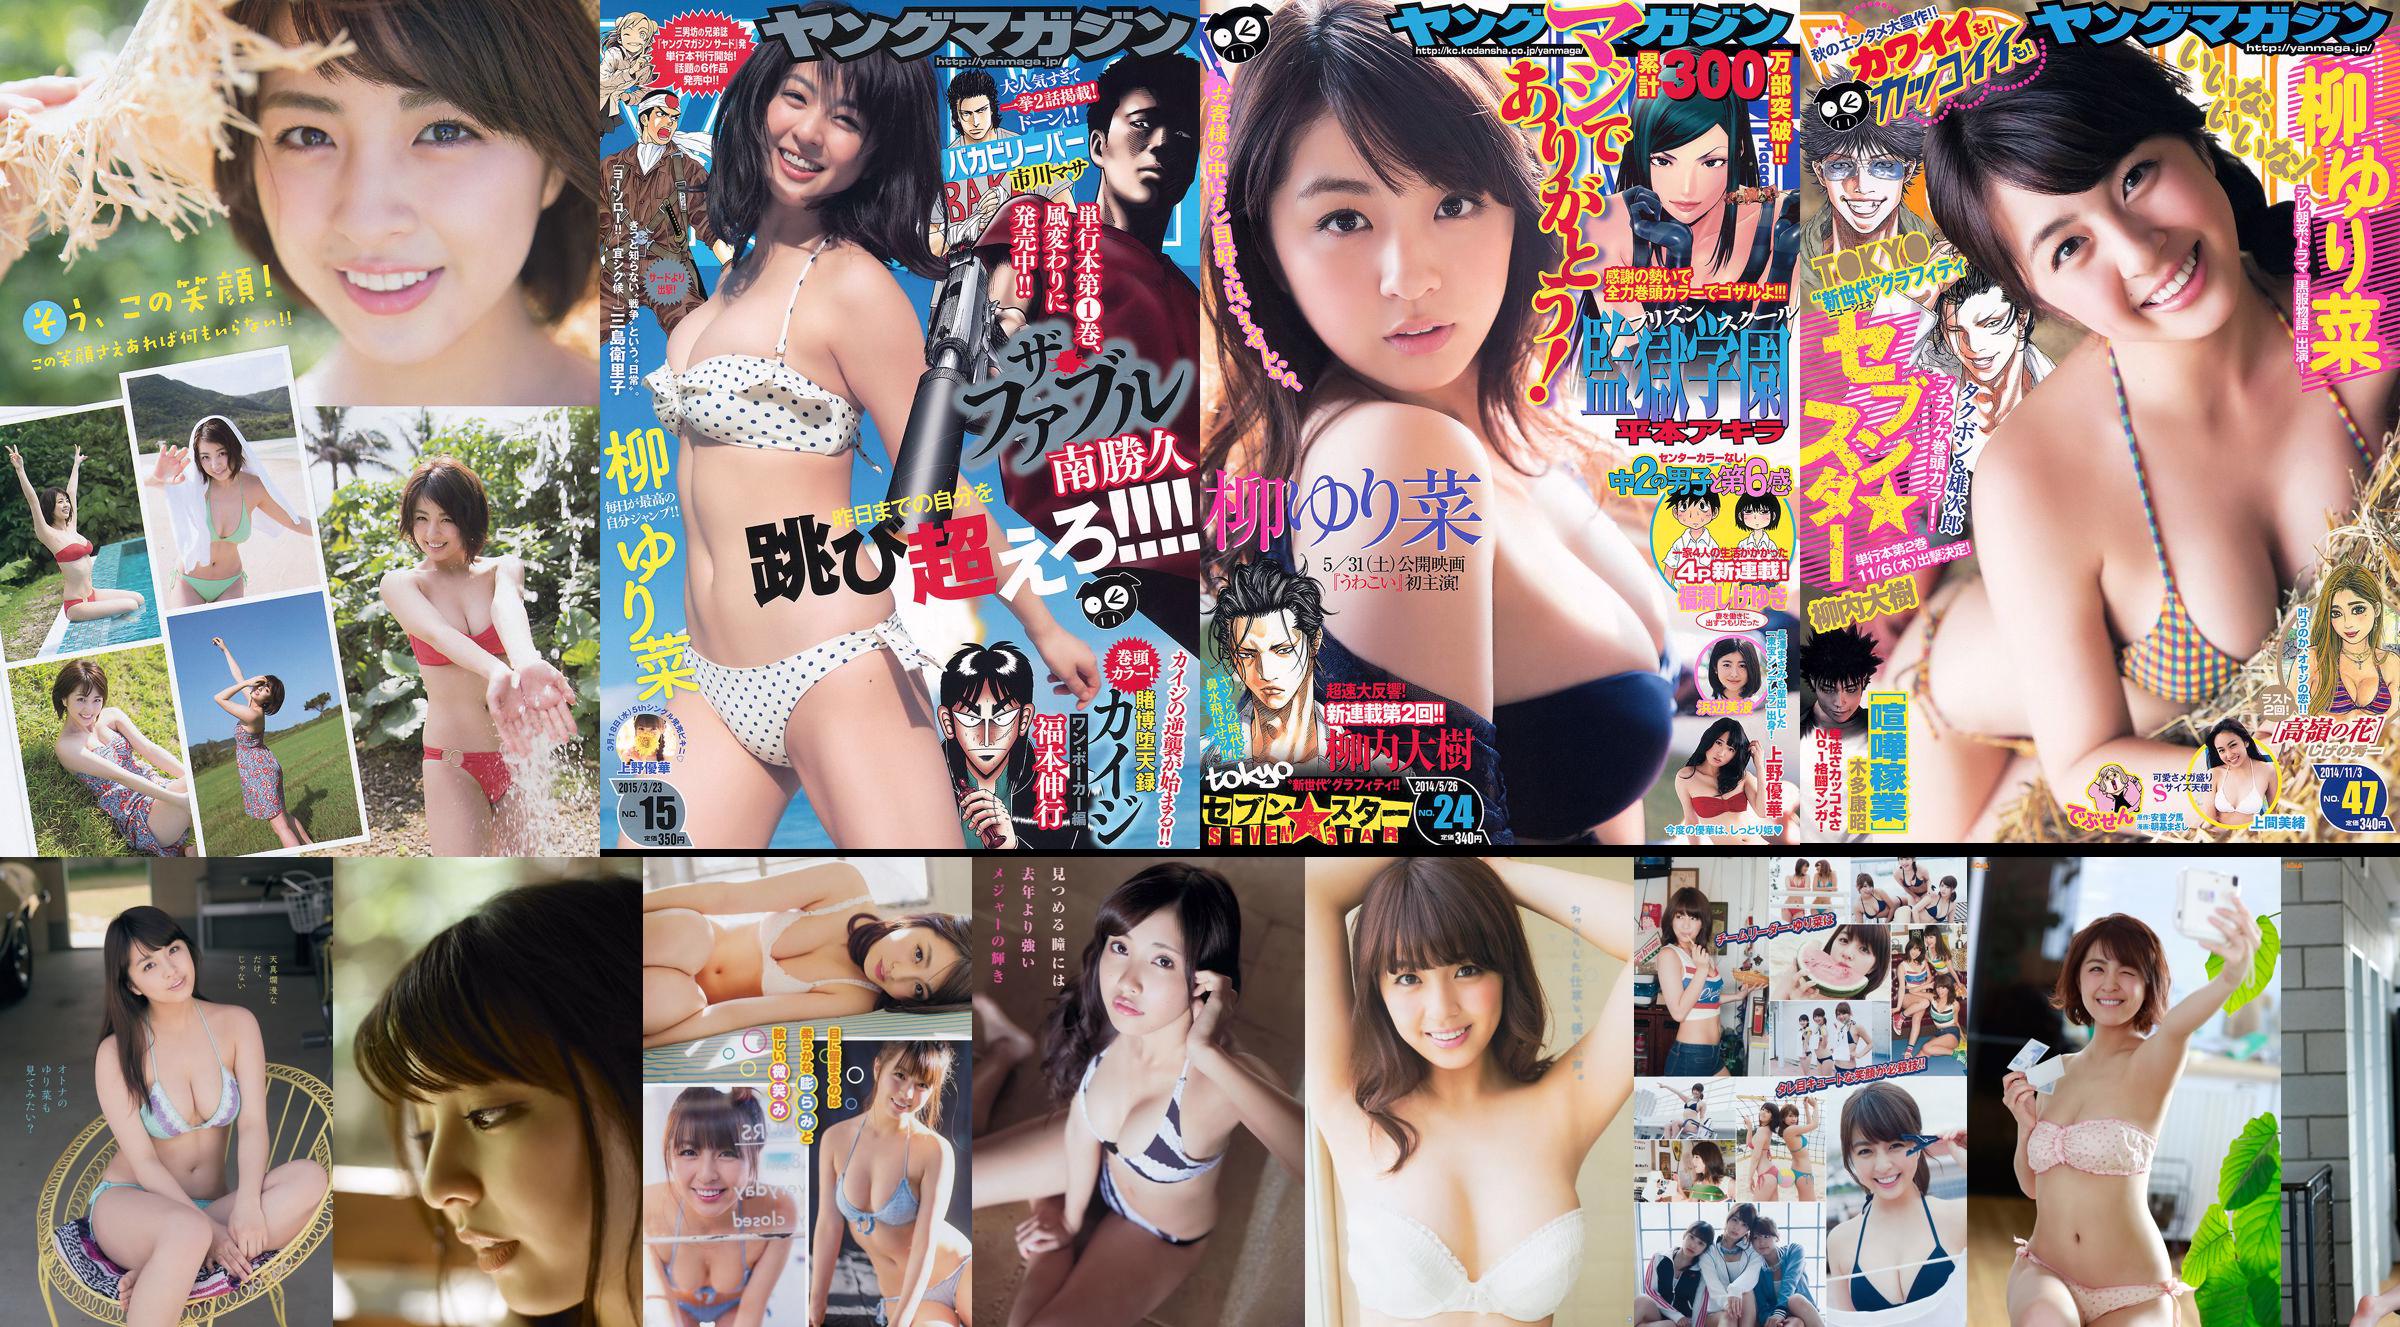 [Young Magazine] Rina Yanagi Mio Uema 2014 Magazine photo n ° 47 No.9b65cb Page 4